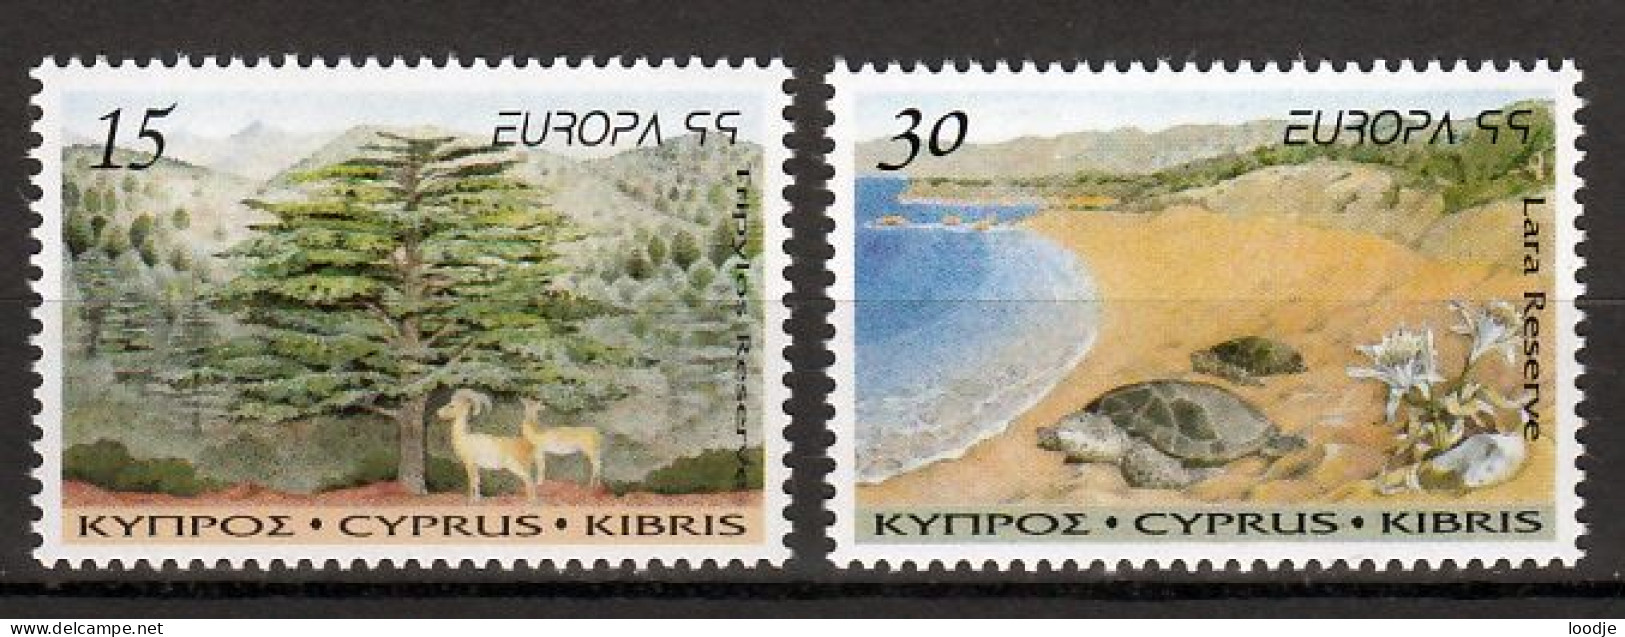 Cyprus Europa Cept 1999 Postfris - 1999